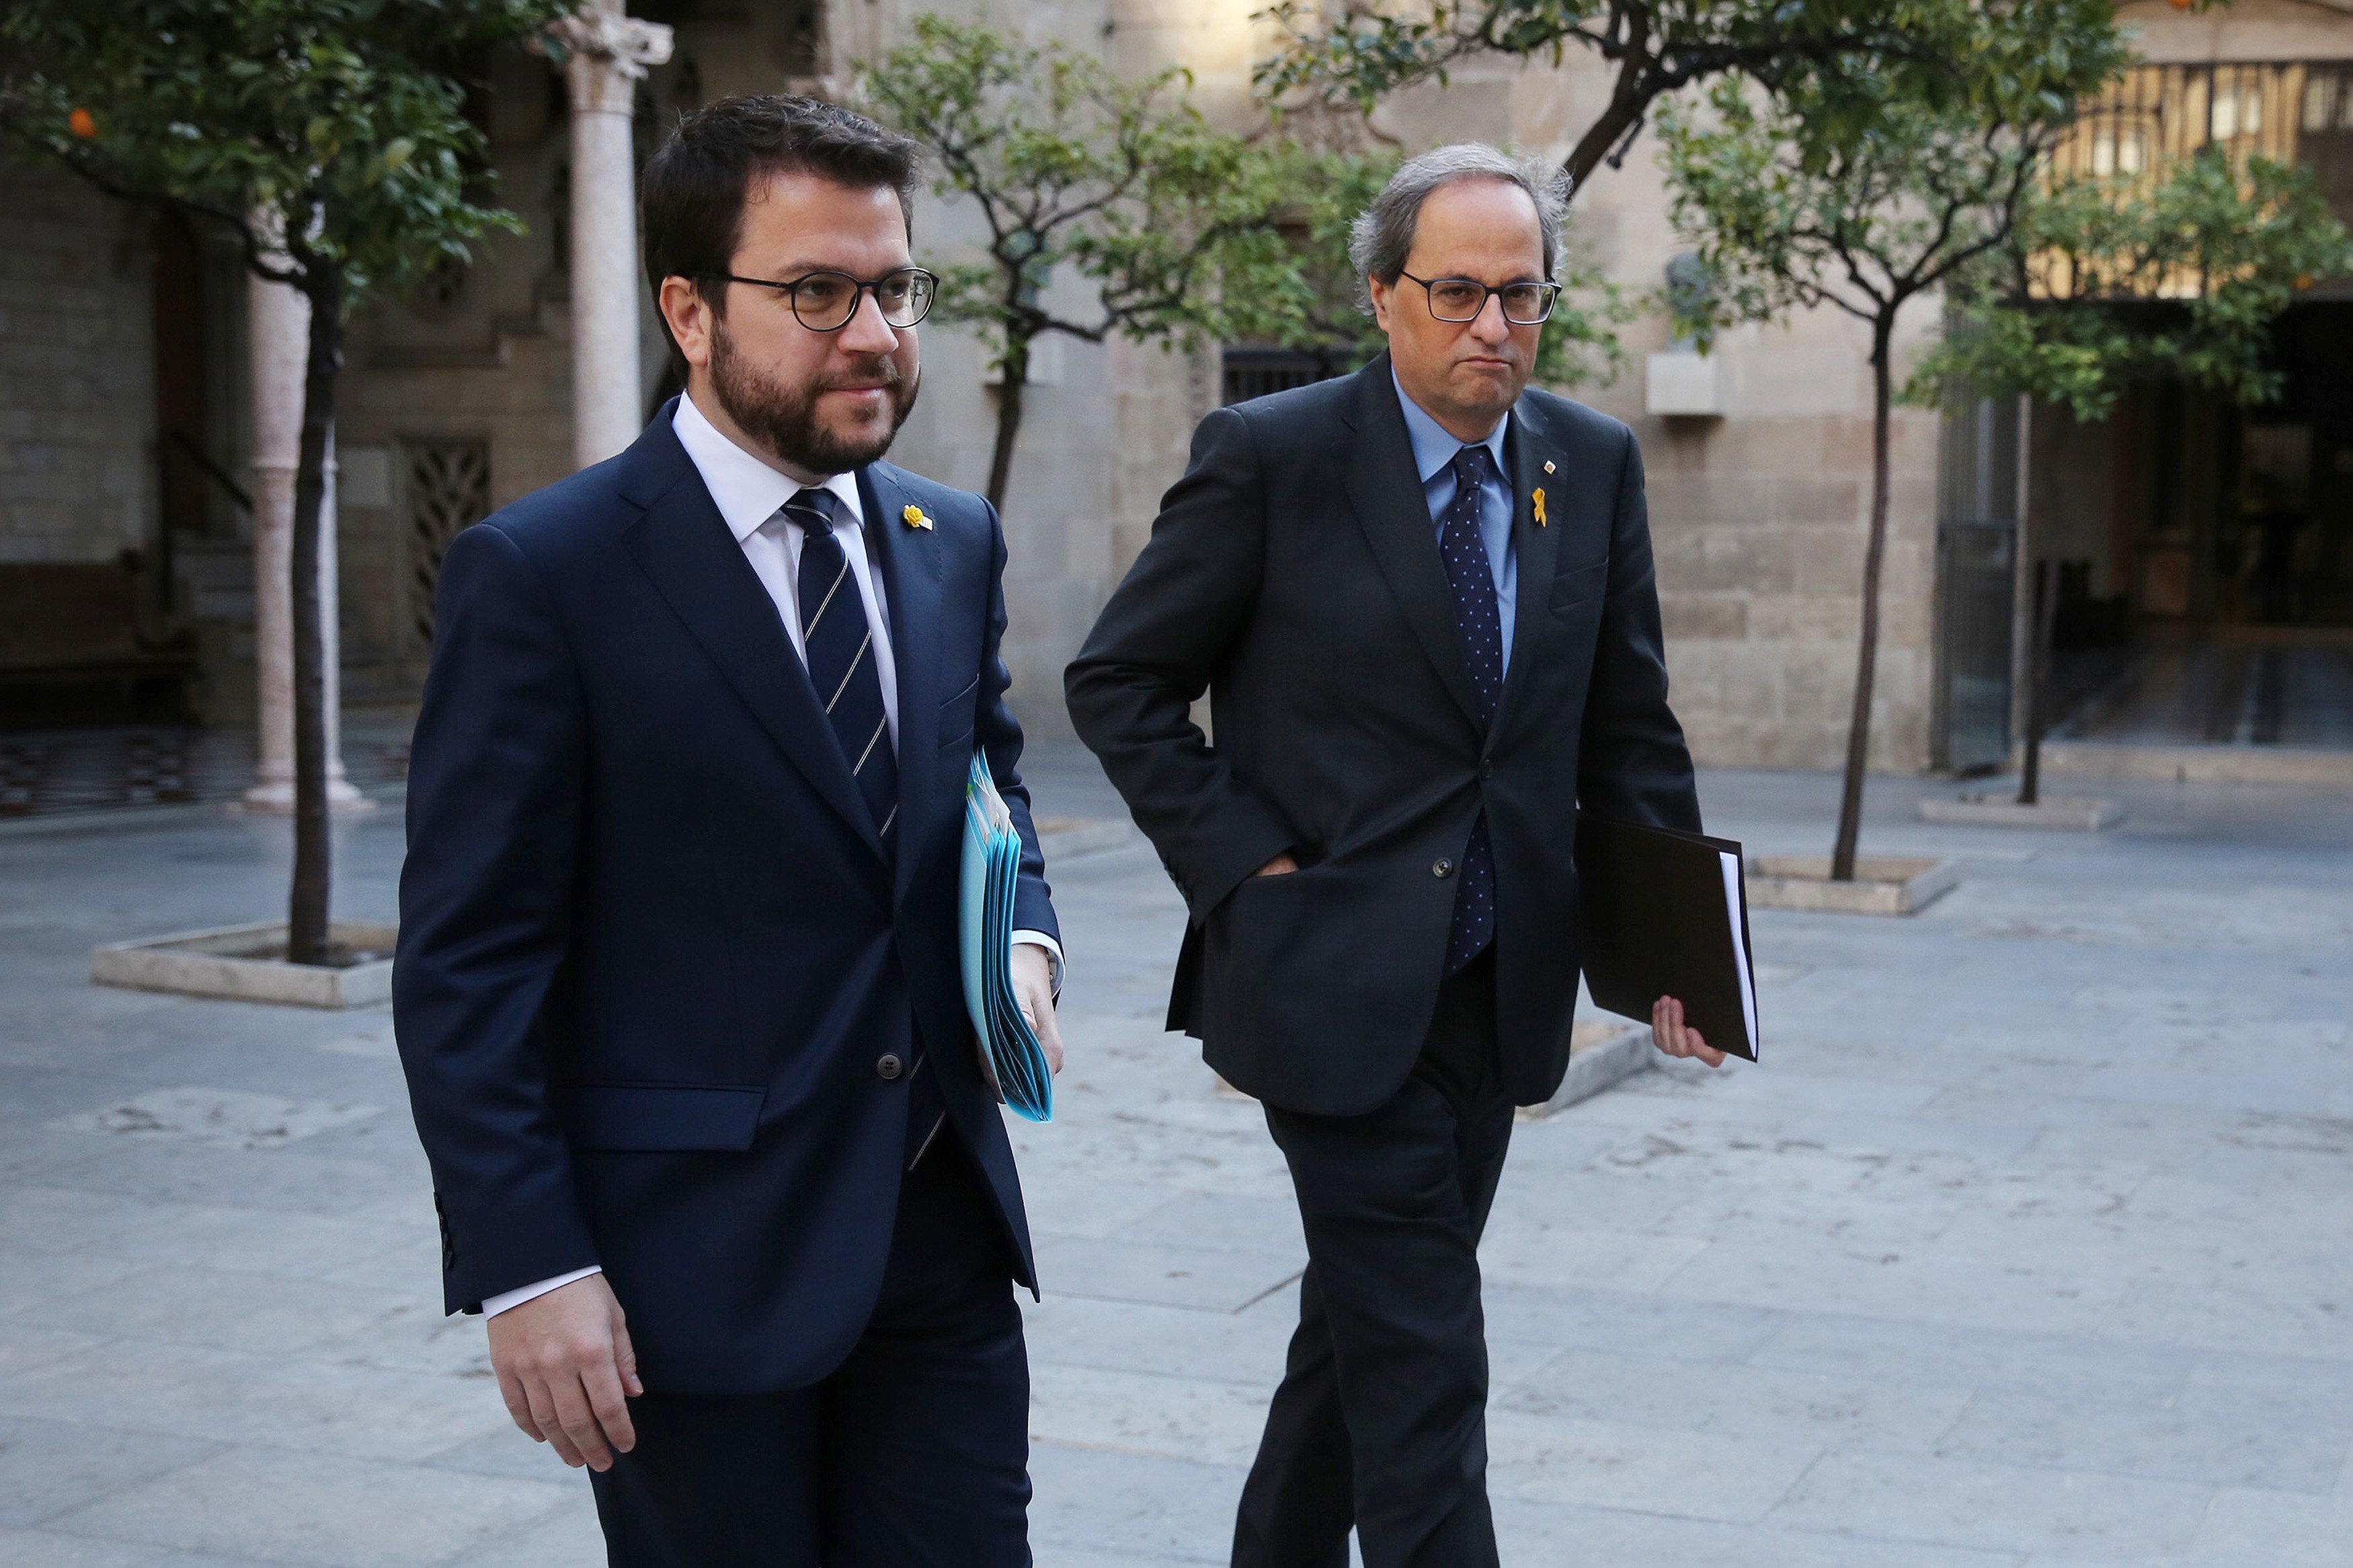 El gabinete de crisis "lamenta profundamente" la no respuesta de Sánchez a la apelación al diálogo